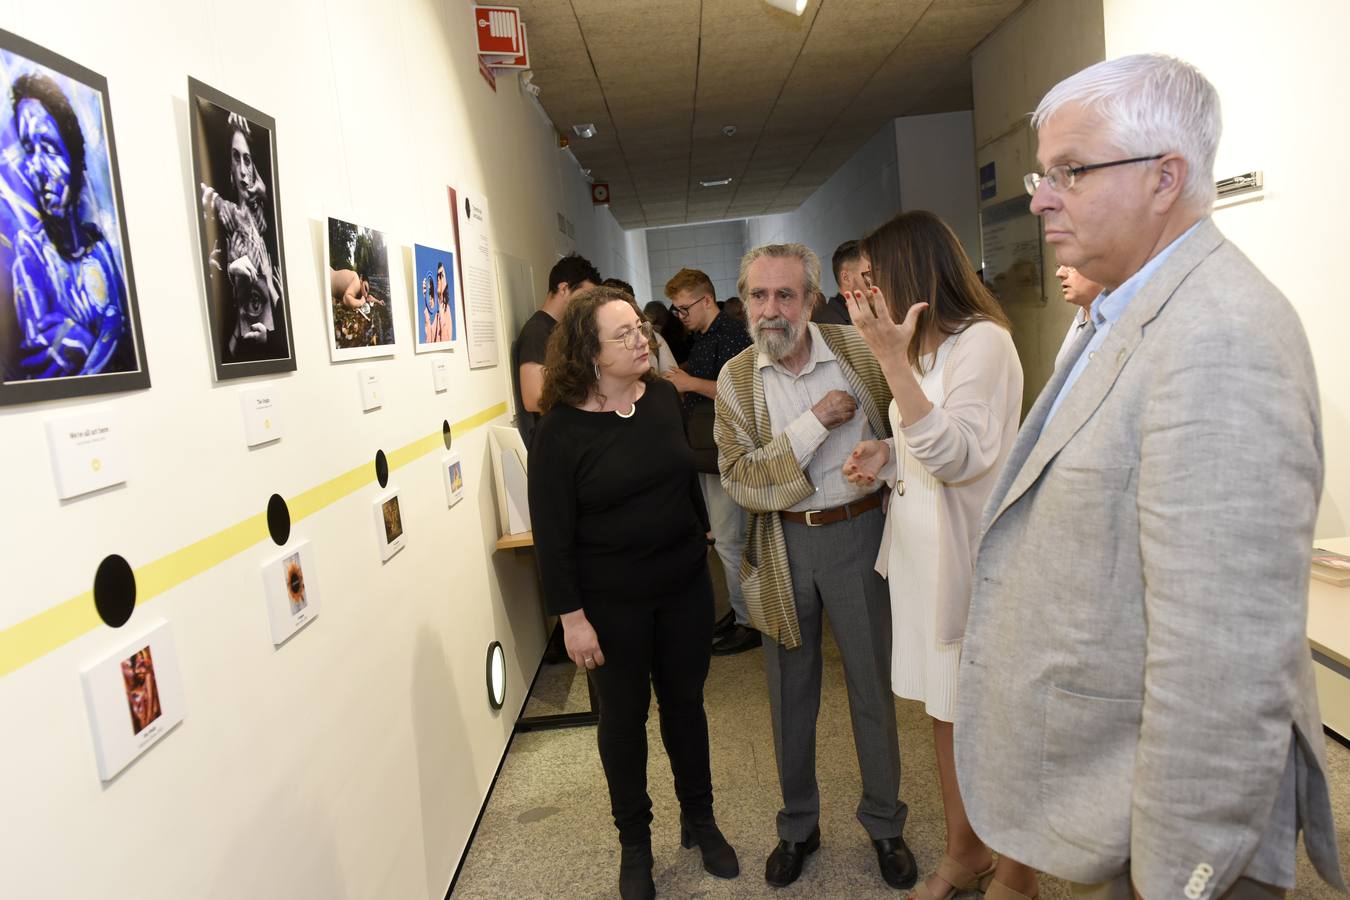 El artista conceptual, Premio Velázquez 2015, inauguró en la Facultad de Comunicación y Documentación una sala expositiva con su nombre.